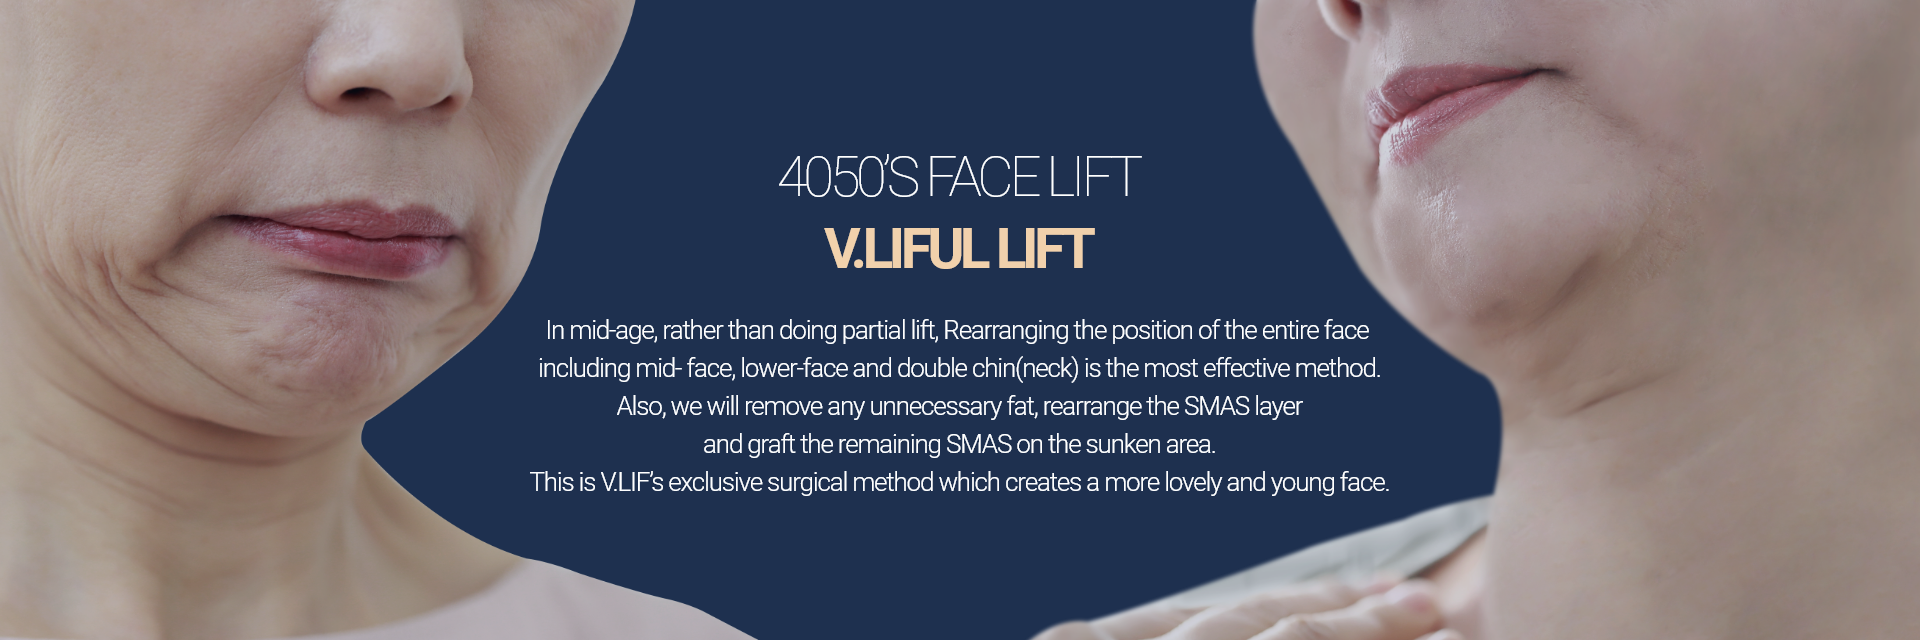 4050대 안면거상술 빌리풀거상 4050대에는 부분적으로 거상하는 방법이 아닌, 중안면부터, 하안면, 이중턱(목)까지 안면전체의 위치를 위로 재배치하는 것이 가장 효과적인 동안성형 방법입니다.